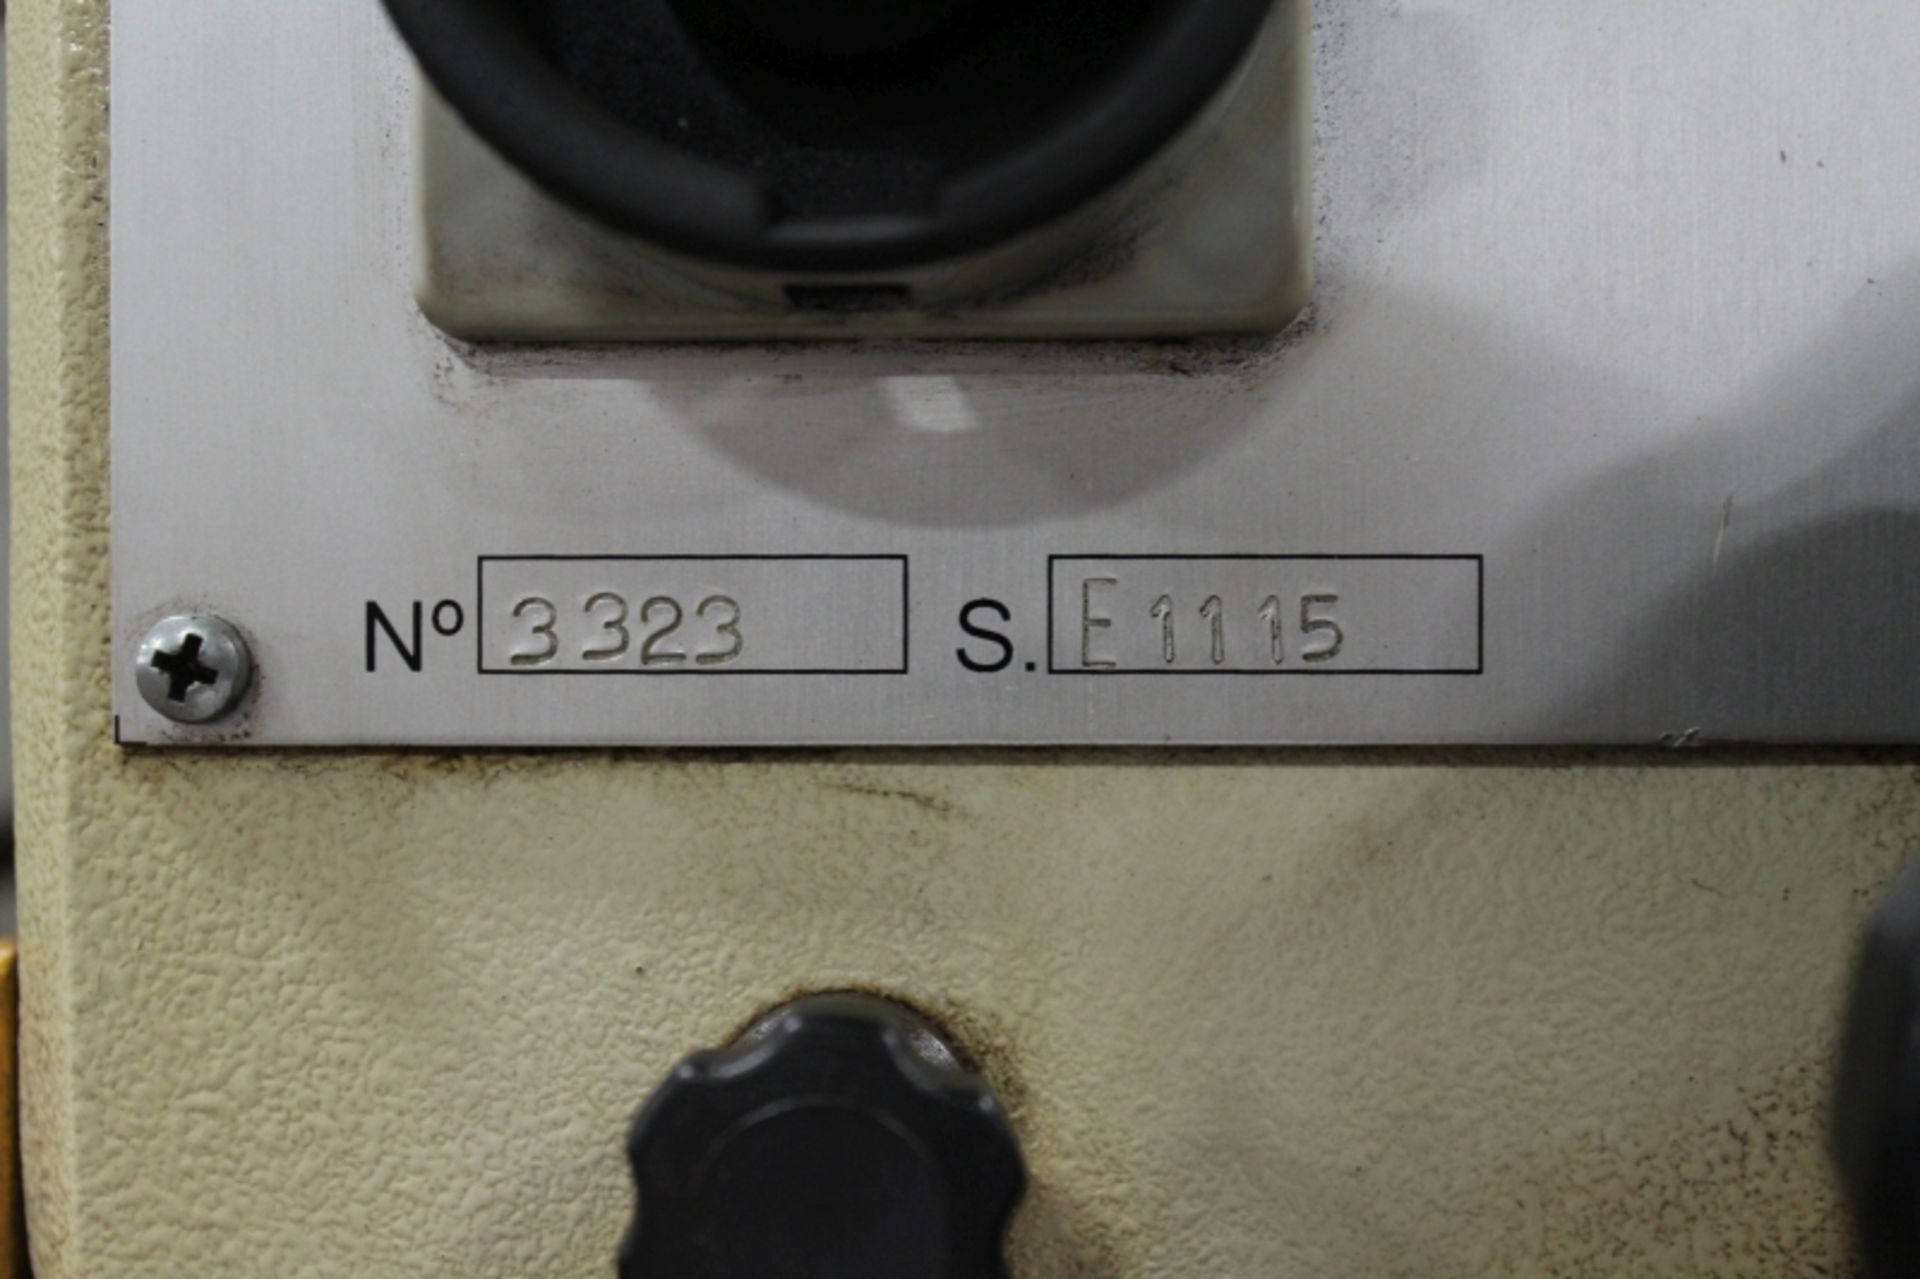 Jet E1115 Drill Presses, New 2012 - Image 4 of 4